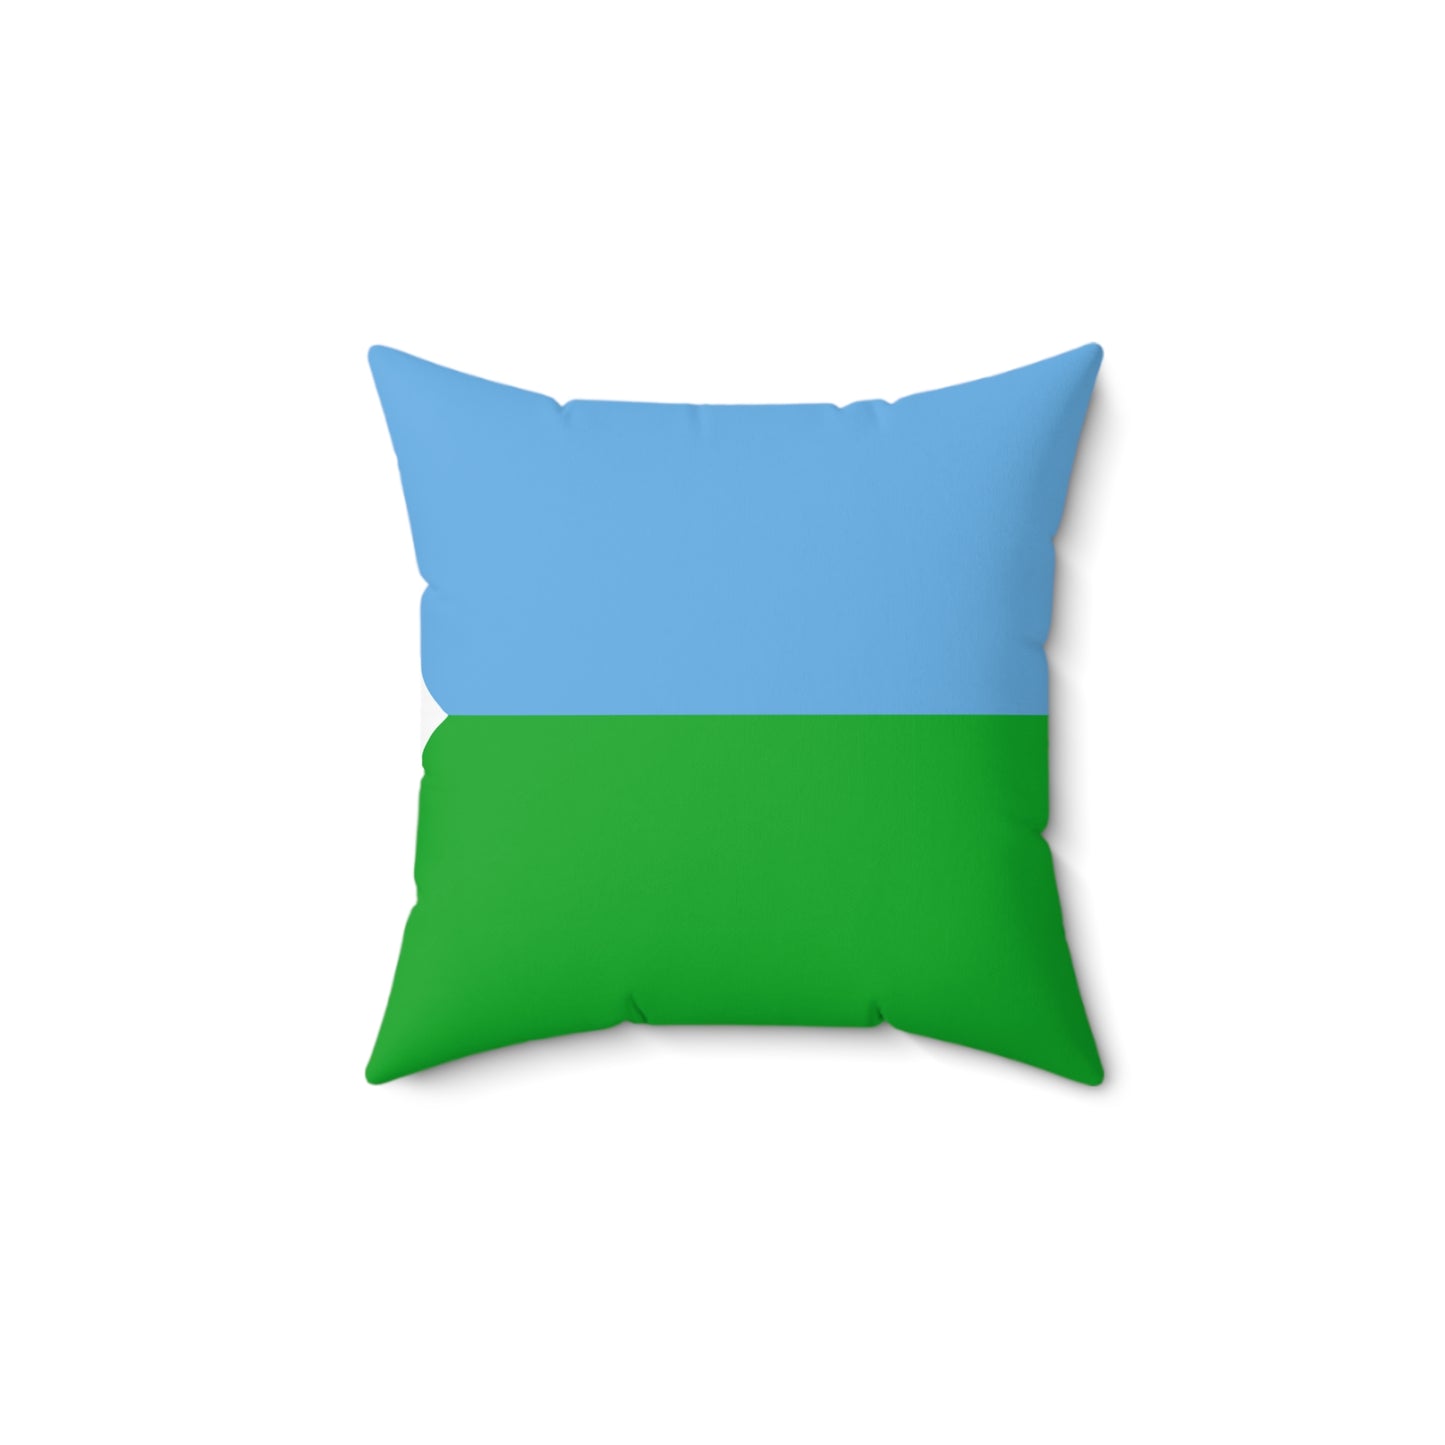 Spun Polyester Square Pillow - Djibouti Flag